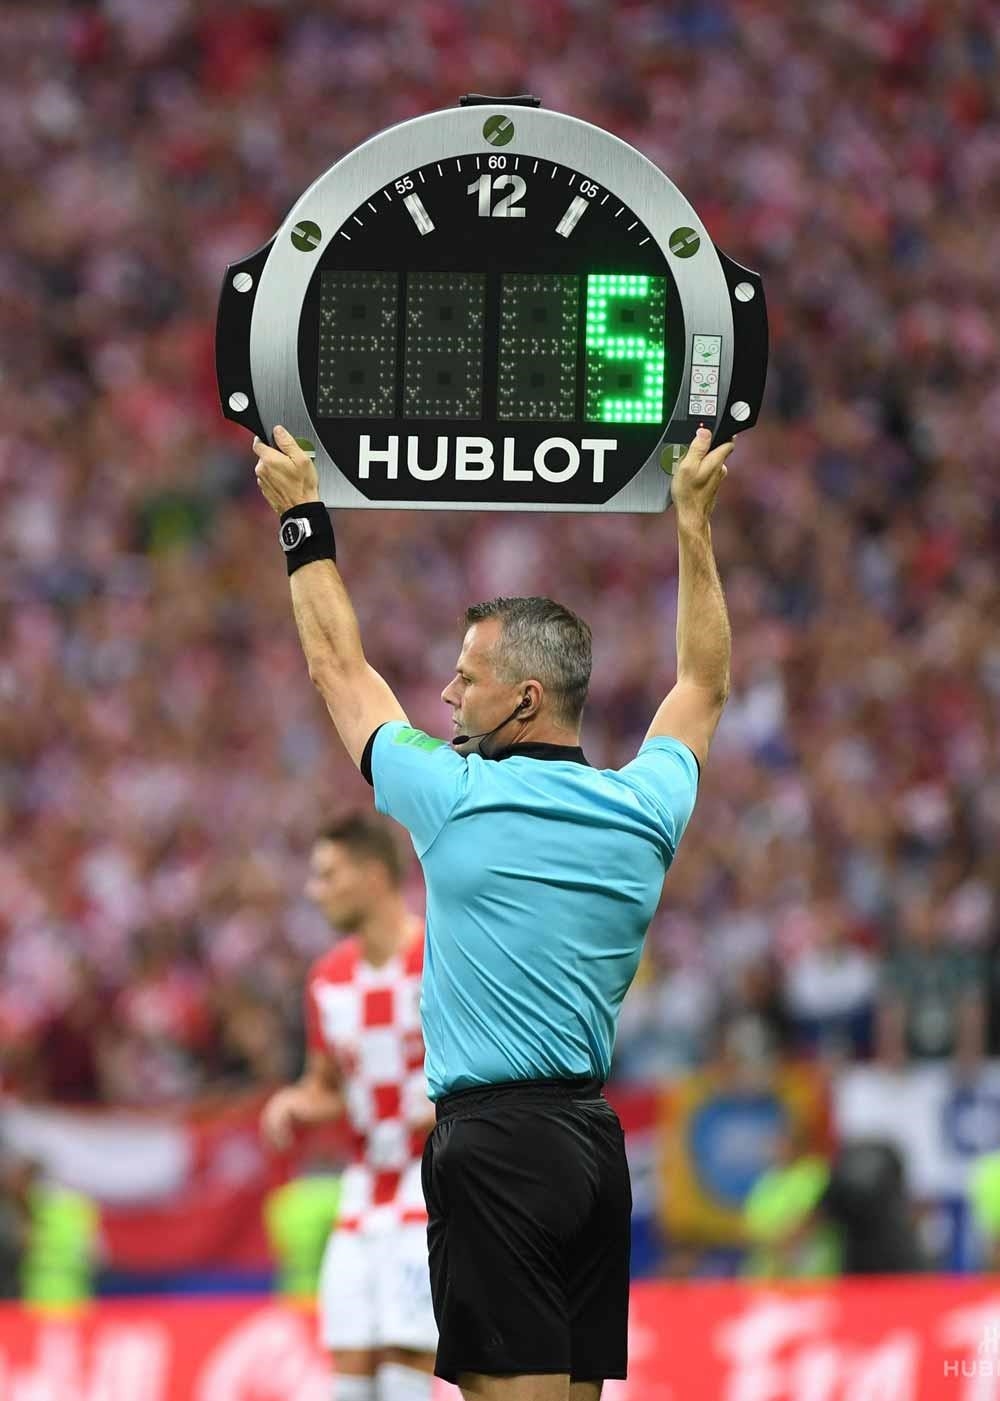 Hình ảnh của Hublot tại giải bóng đá World Cup 2018.